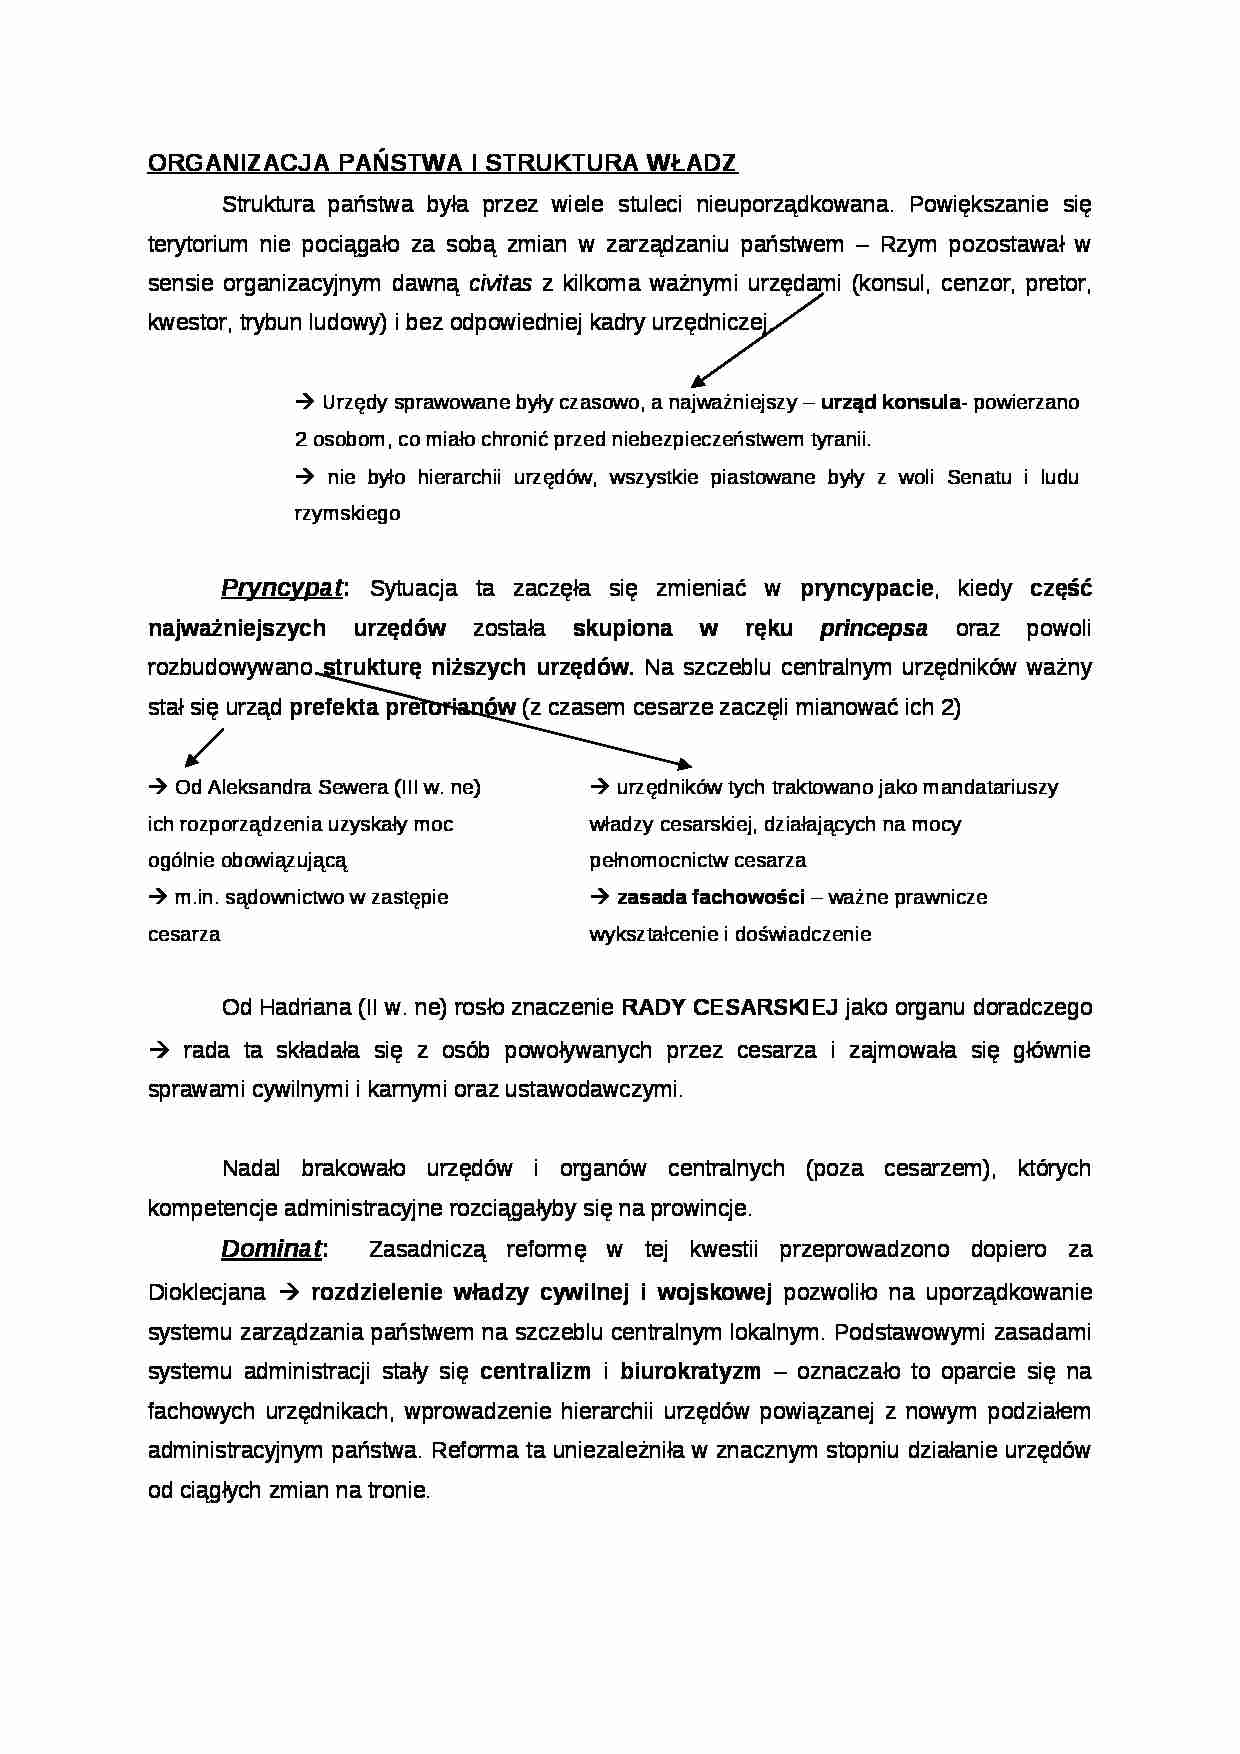 Organizacja państwa i struktura władz - strona 1